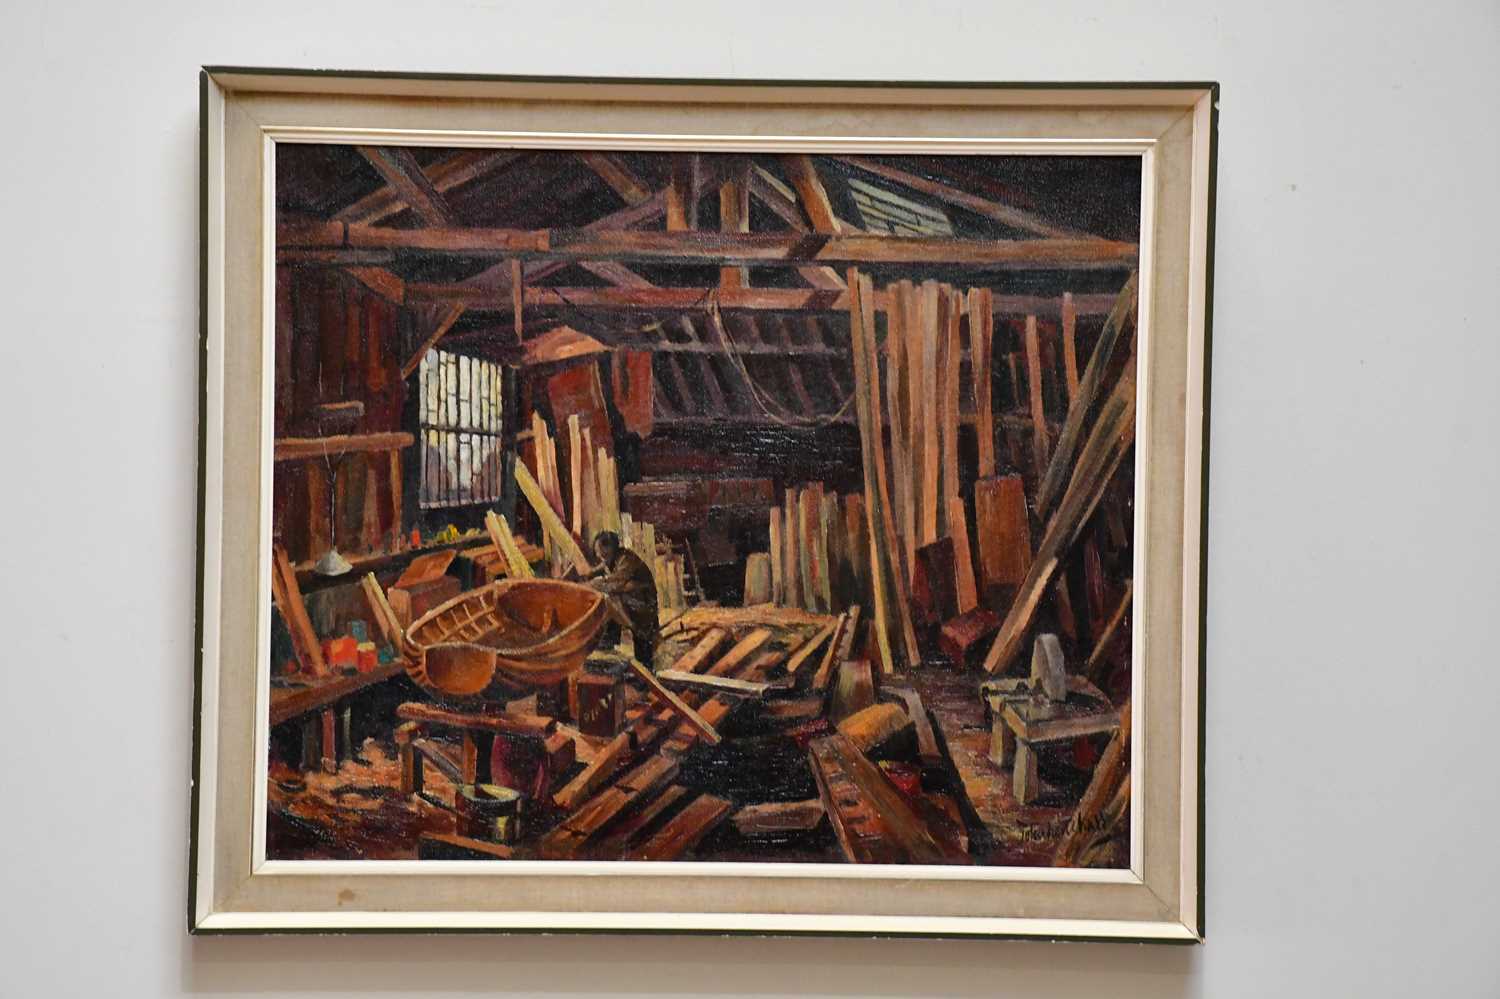 † JOHN HENSHALL; oil on canvas, interior workshop scene, signed, 62 x 77cm, framed.